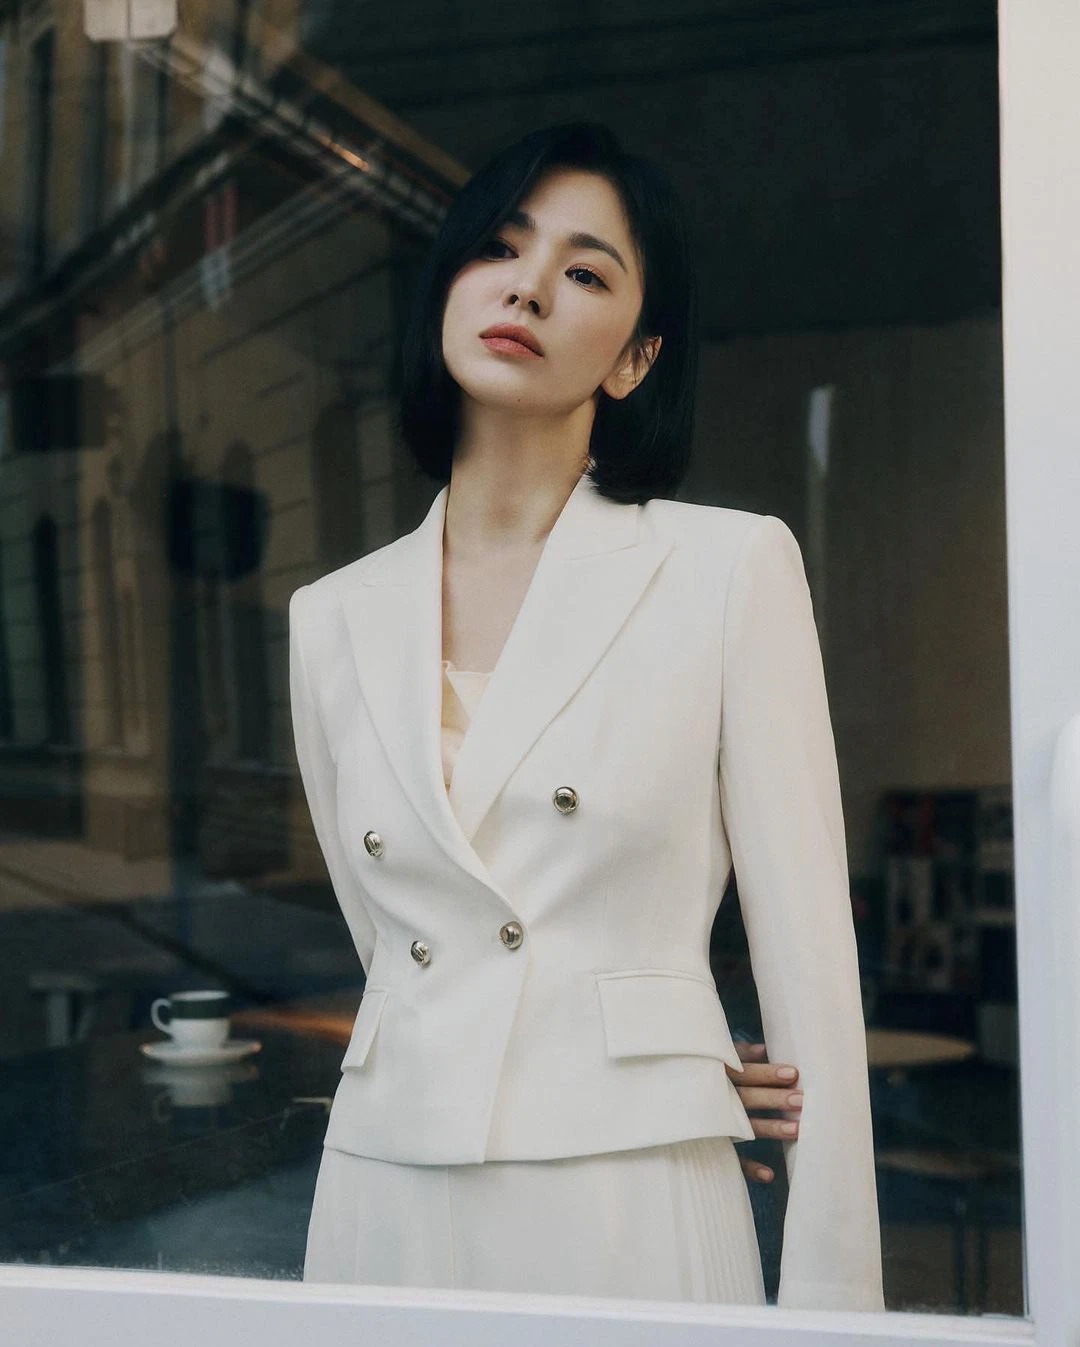 Trọn bộ ảnh Song Hye Kyo ở tuổi 41: Nhan sắc liệu có còn xứng danh 'quốc bảo nhan sắc' 12